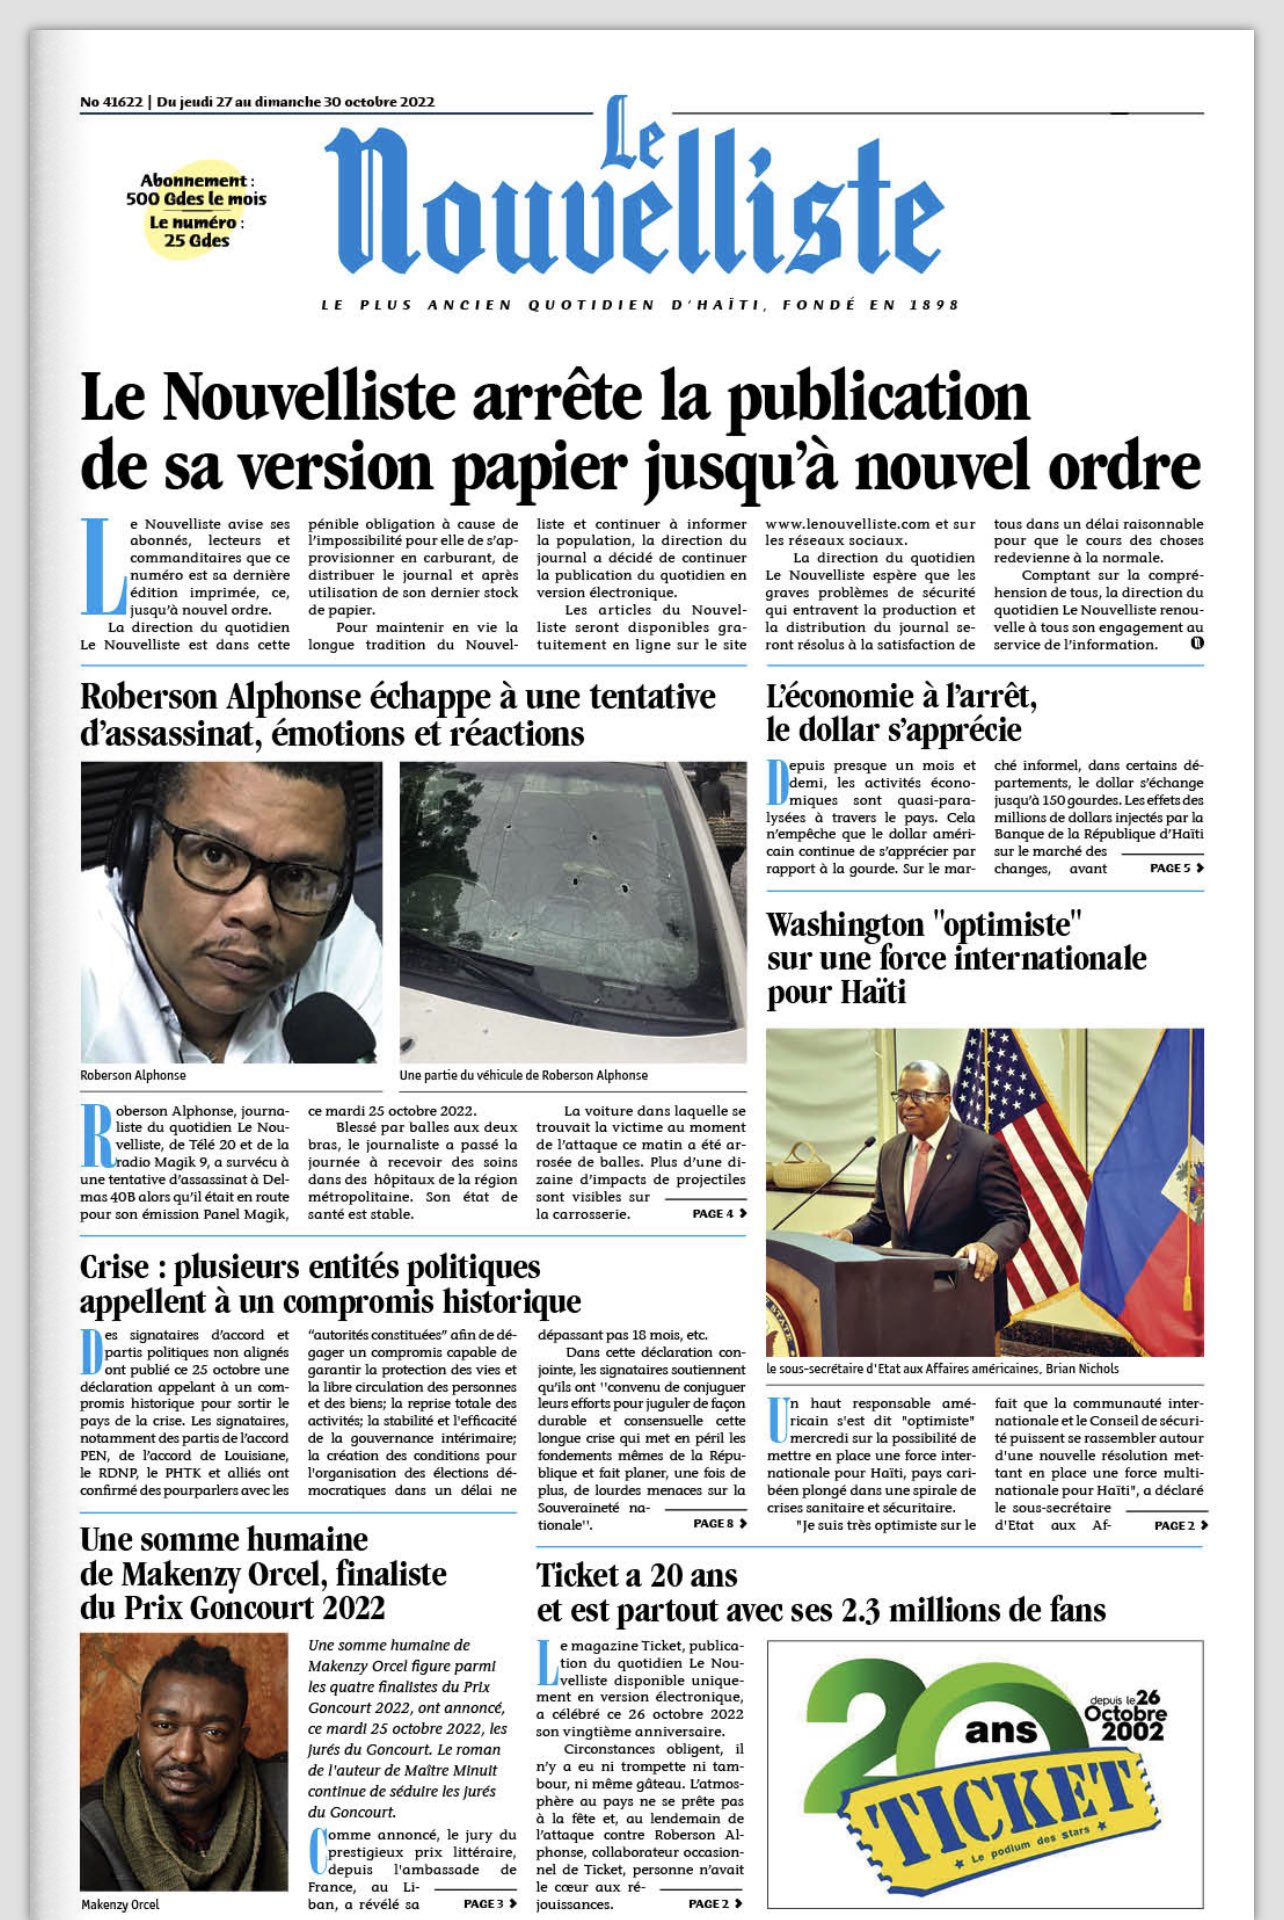 Cover of Hait's Le Nouvelliste newspaper